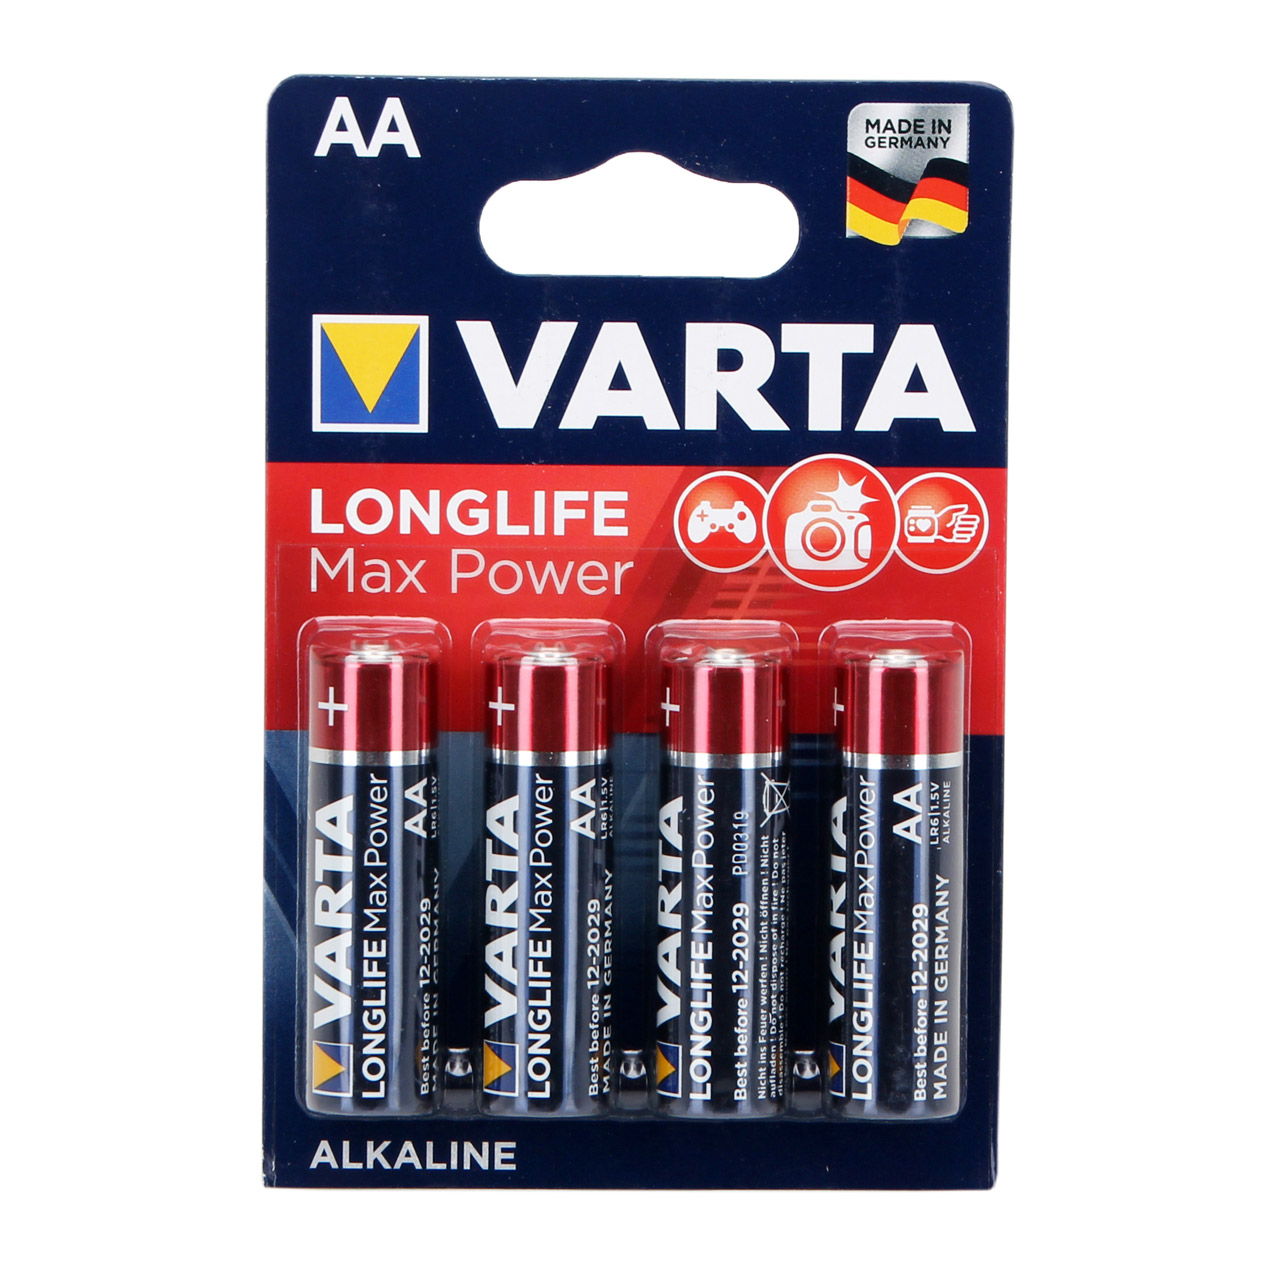 4x VARTA Batterie LONGLIFE MAX POWER Alkaline AA LR6 Mignon 1,5V